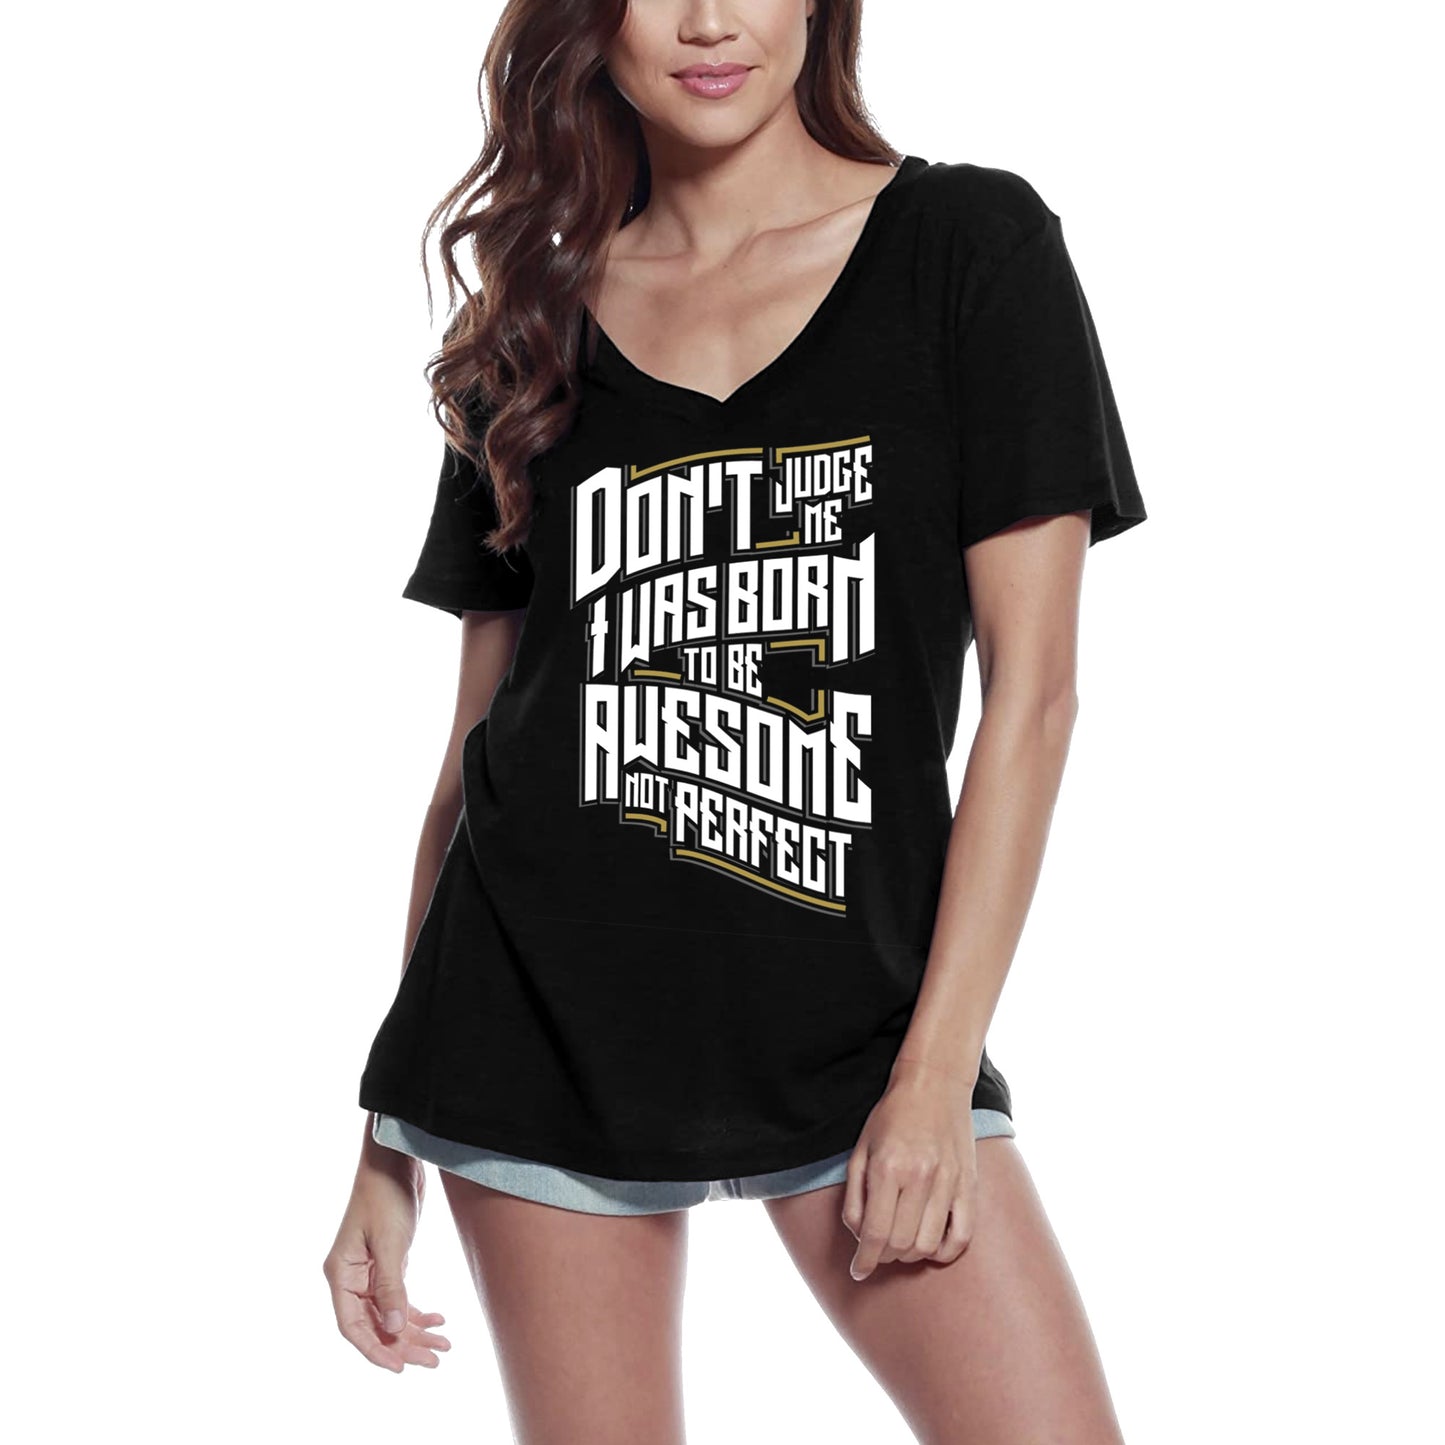 T-shirt ULTRABASIC pour femmes, génial, pas parfait, avec slogan d'humour sarcastique